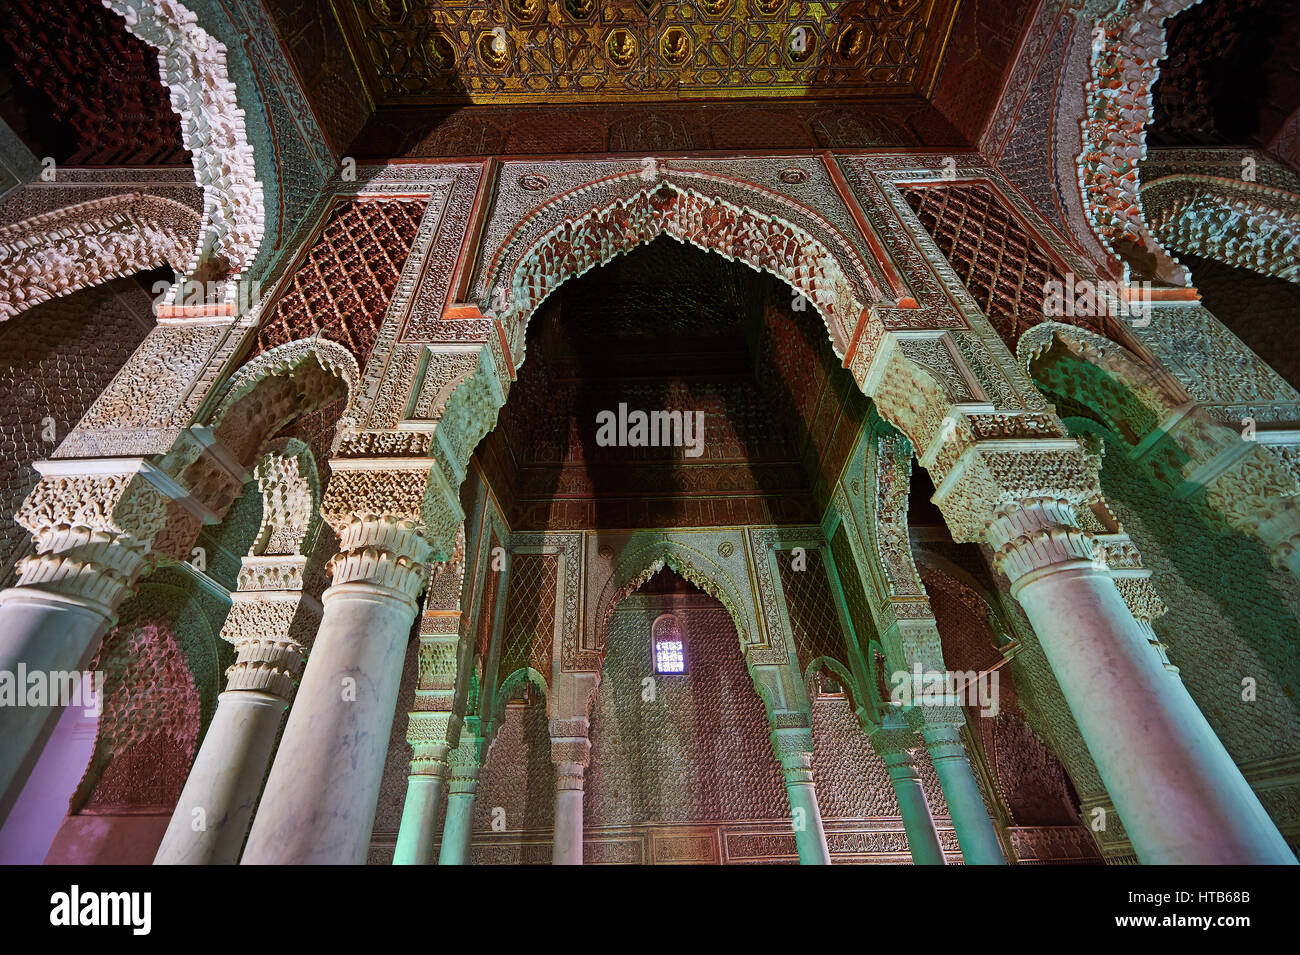 Die Arabeske Architektur das Grab des al-Mansur Sohn in der Saadian Gräber aus dem 16. Jahrhundert Mausoleum der Herrscher Saadian, Marrakesch, Marokko Stockfoto